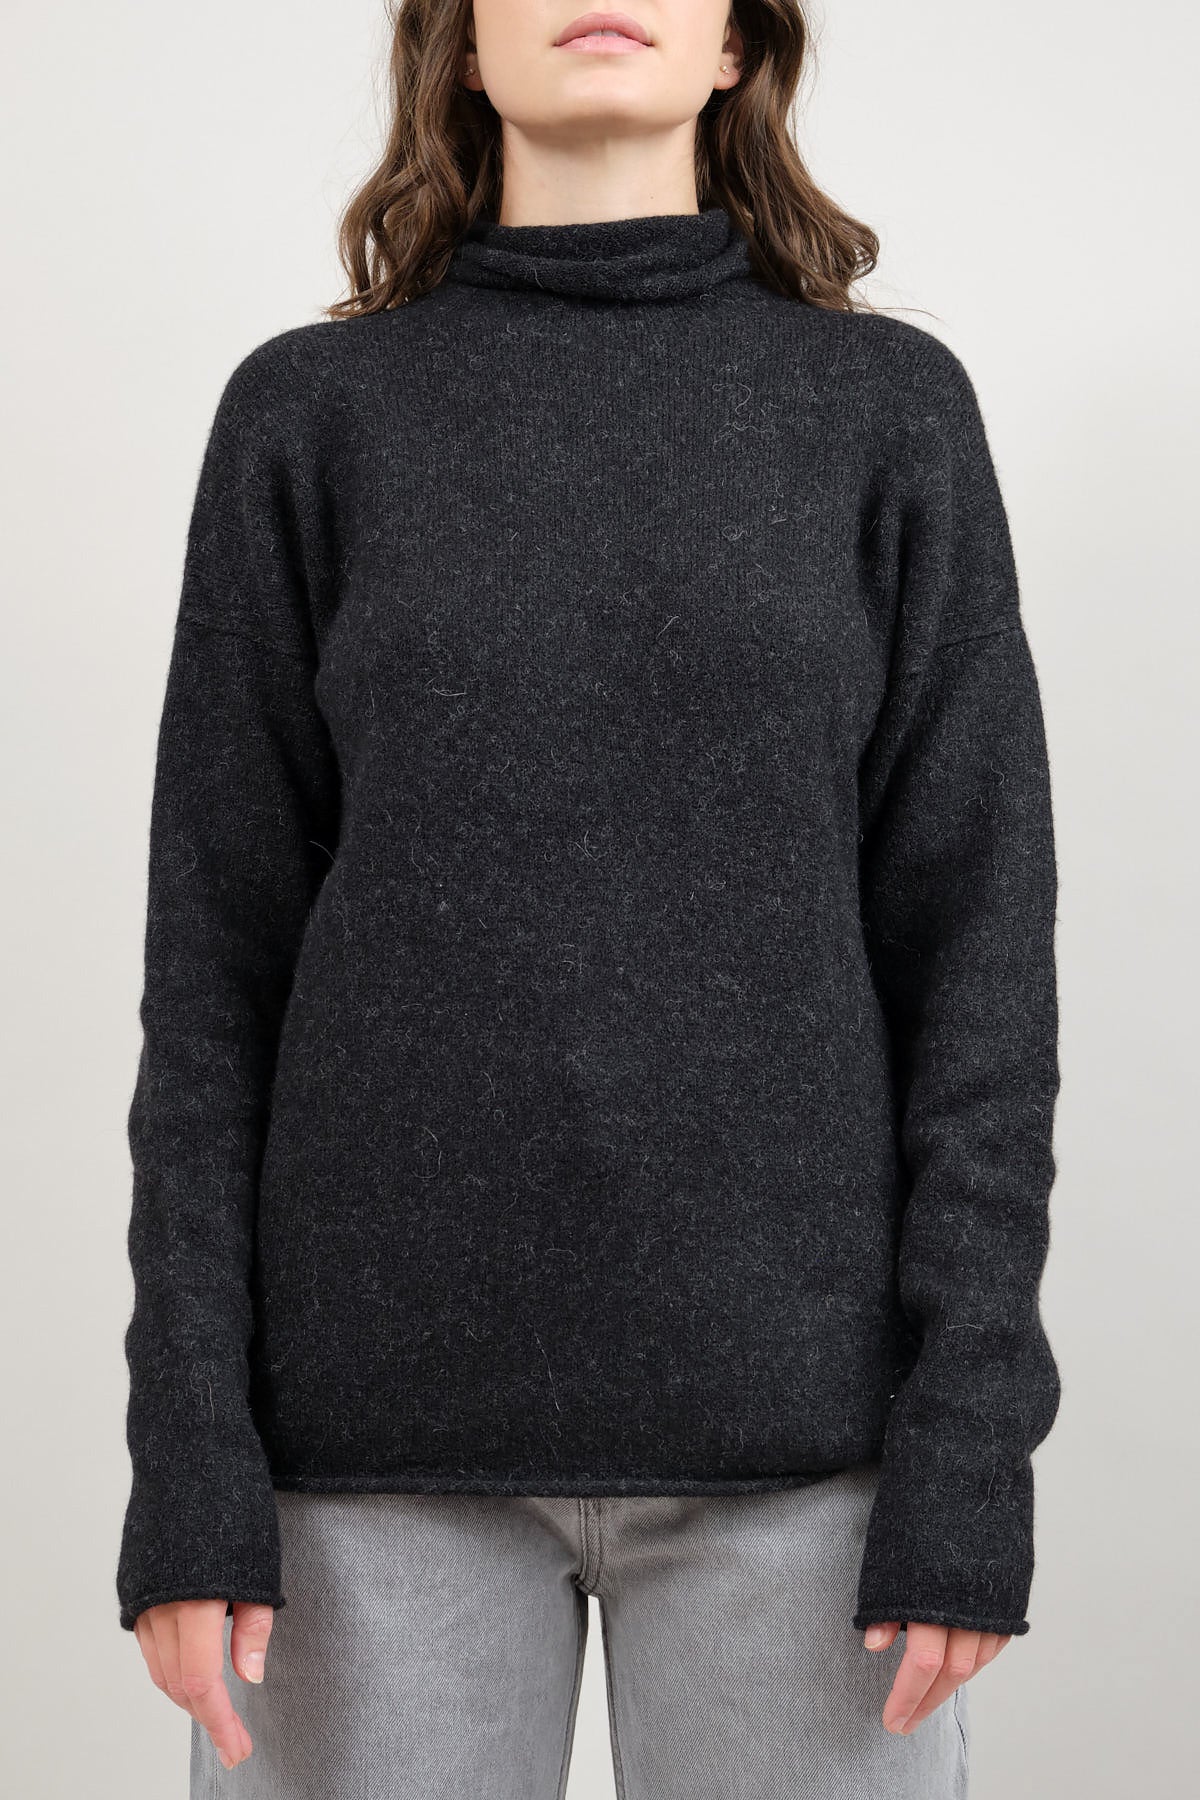 Front of Soft Funnel Sweater in Black Melange